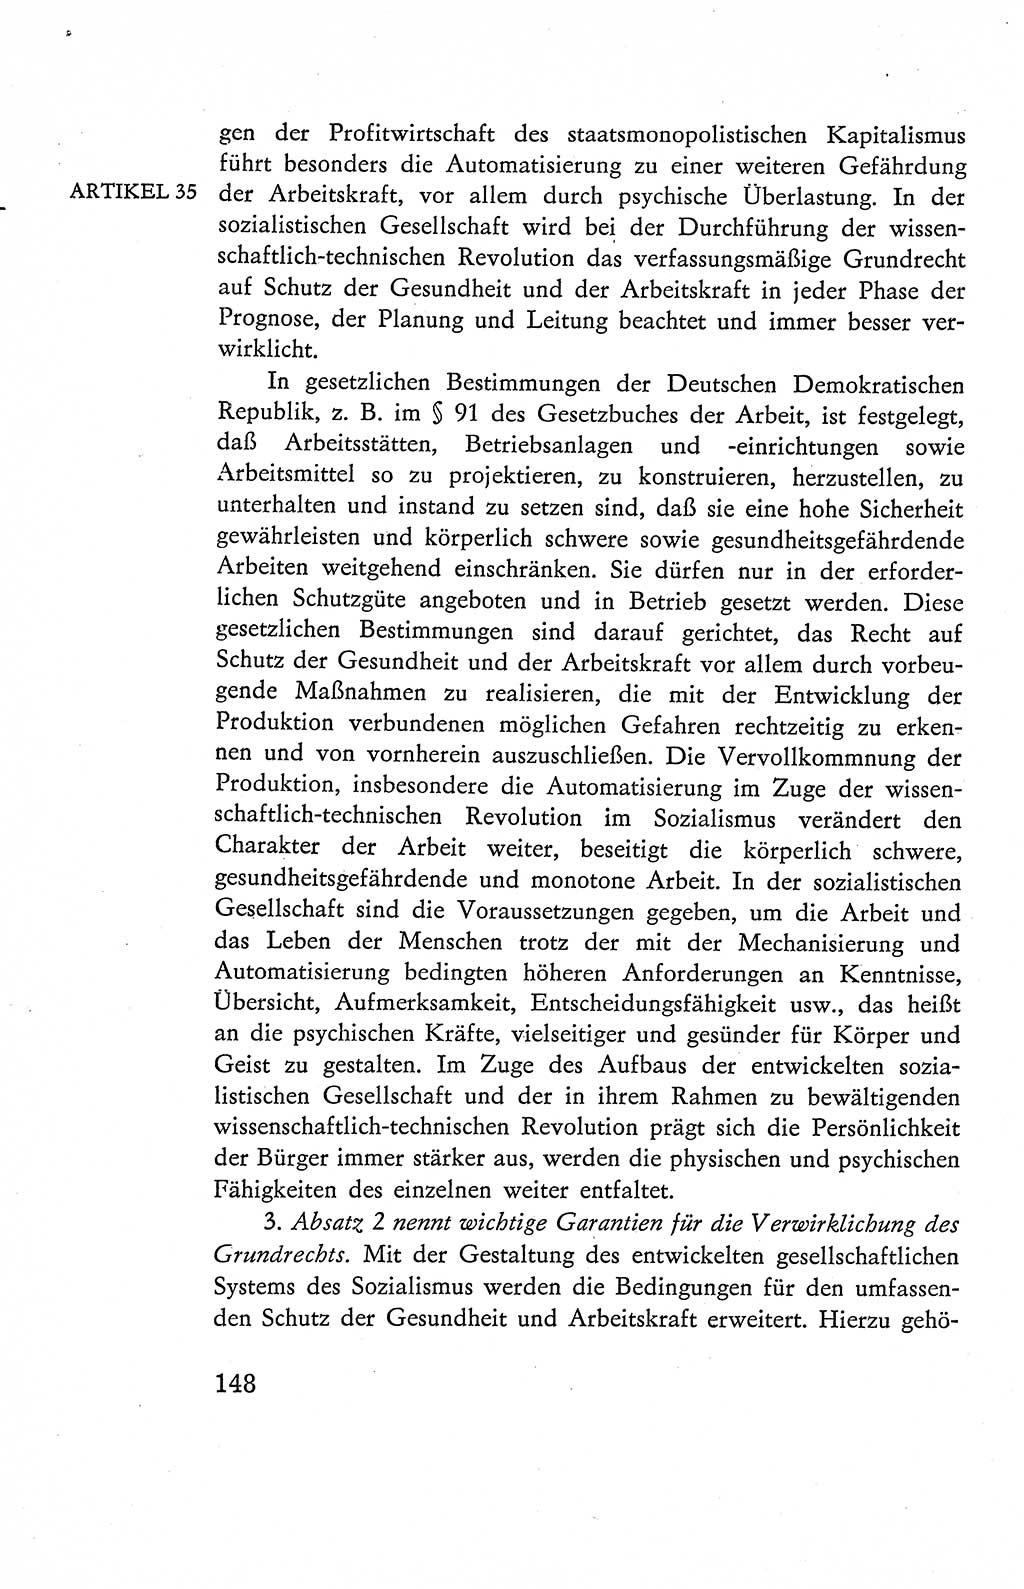 Verfassung der Deutschen Demokratischen Republik (DDR), Dokumente, Kommentar 1969, Band 2, Seite 148 (Verf. DDR Dok. Komm. 1969, Bd. 2, S. 148)